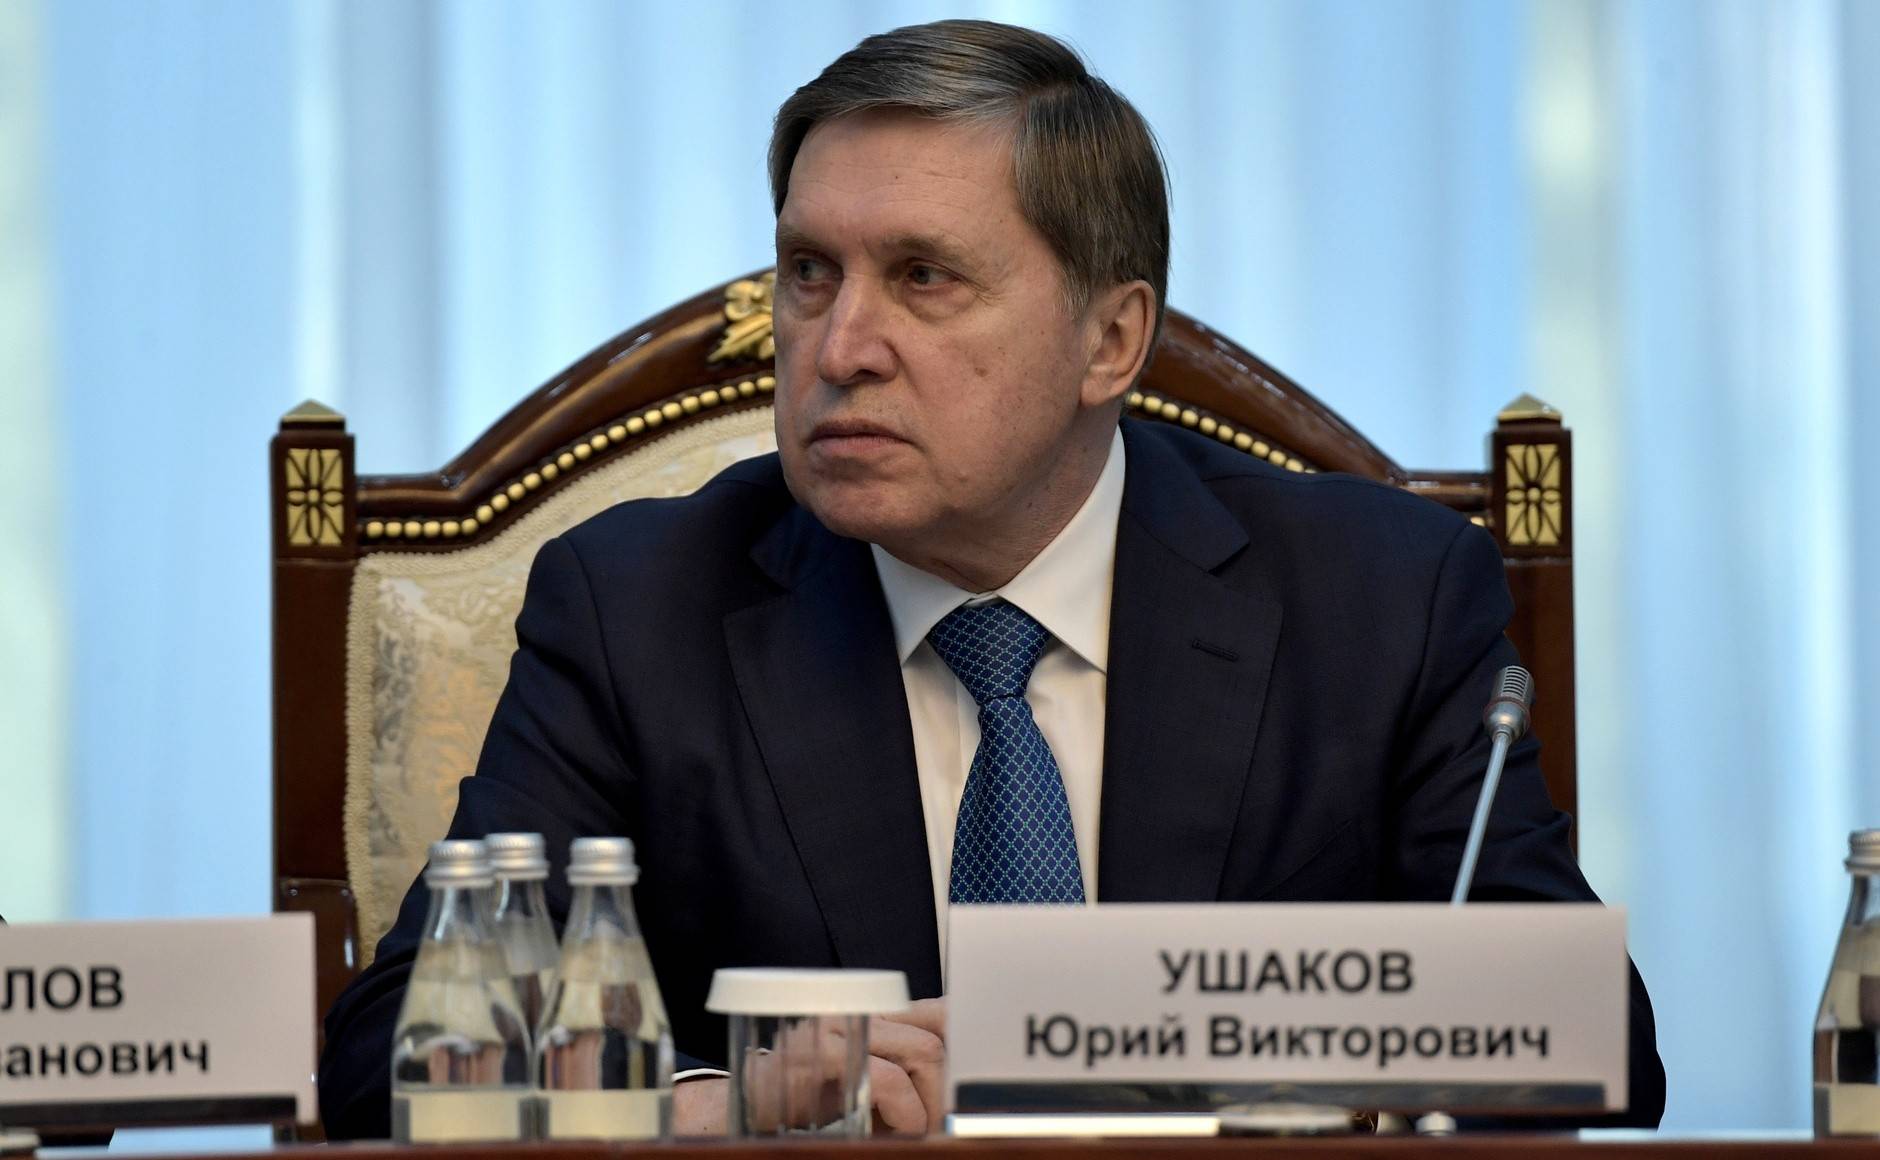 Ушаков: Кремль запланировал визит президента РФ на саммиты АТЭС и G20